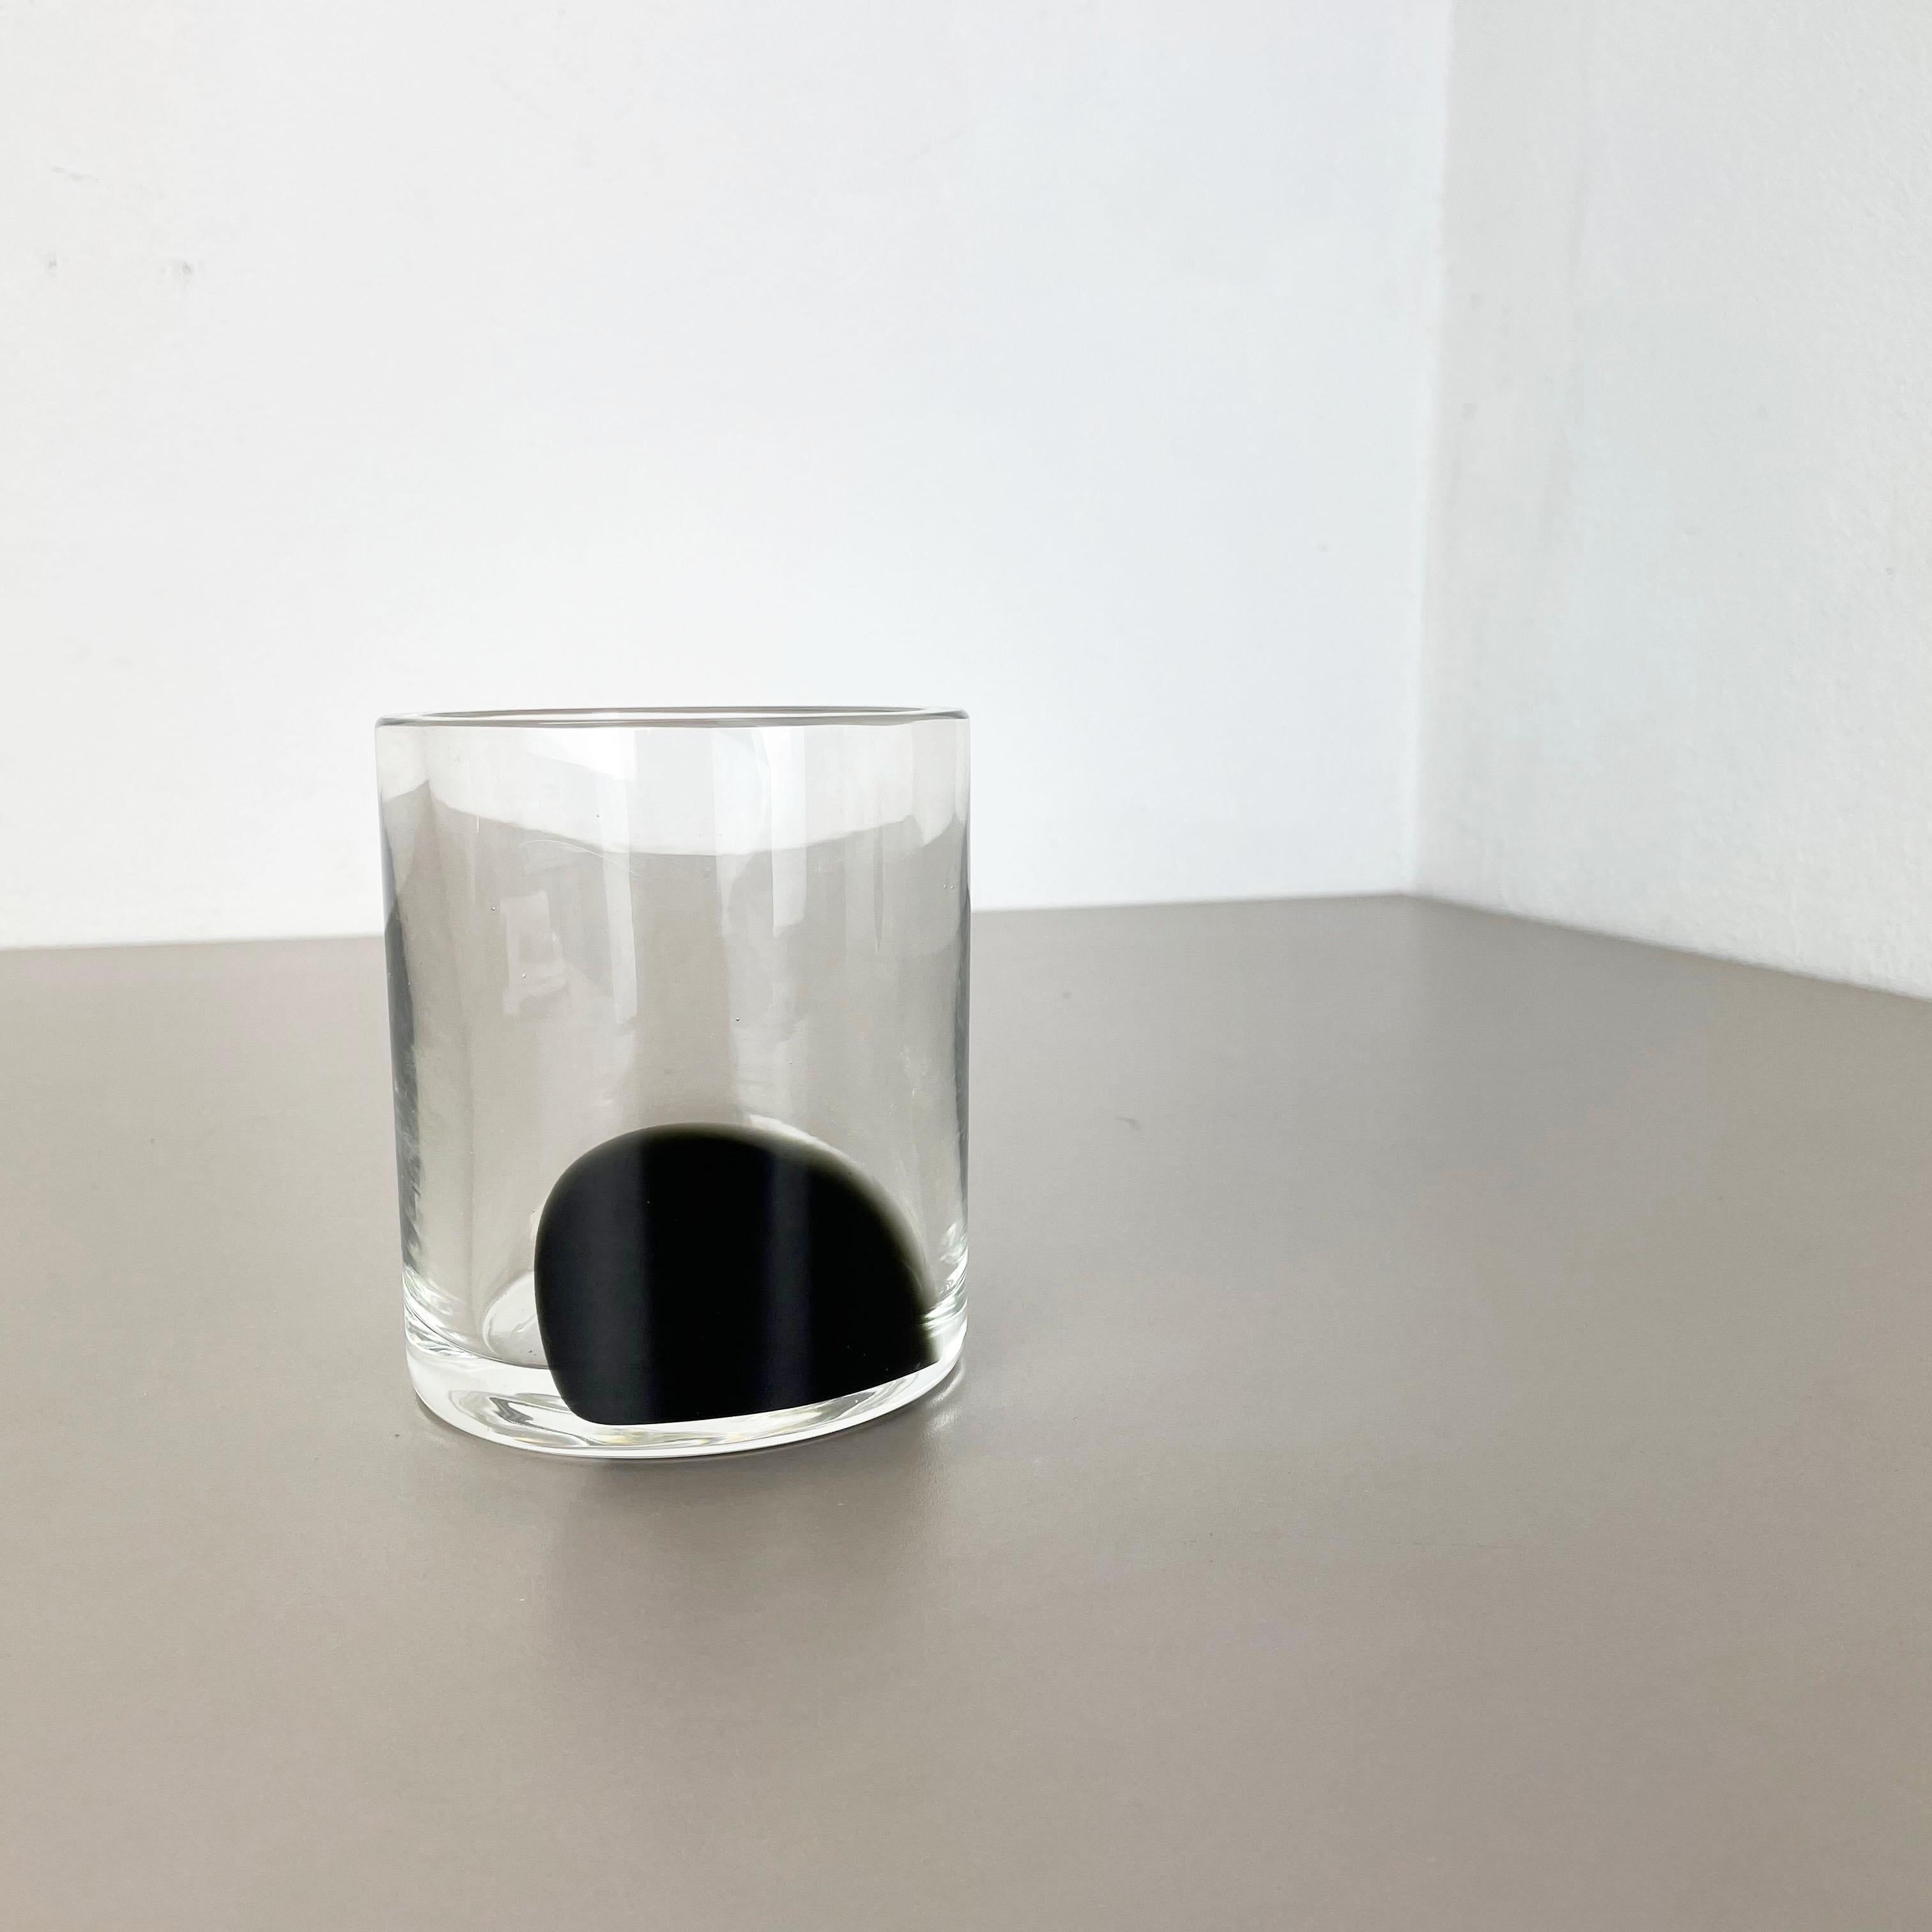 Artikel:

Vasen-Element aus Muranoglas


Entwurf:

Antonio da Ros


Produzent:

Cenedese Vetri (markiert unter der Vase)


Herkunft:

Murano, Italien


Jahrzehnt:

1960er-1970er Jahre


Diese originelle Glasvase wurde in den